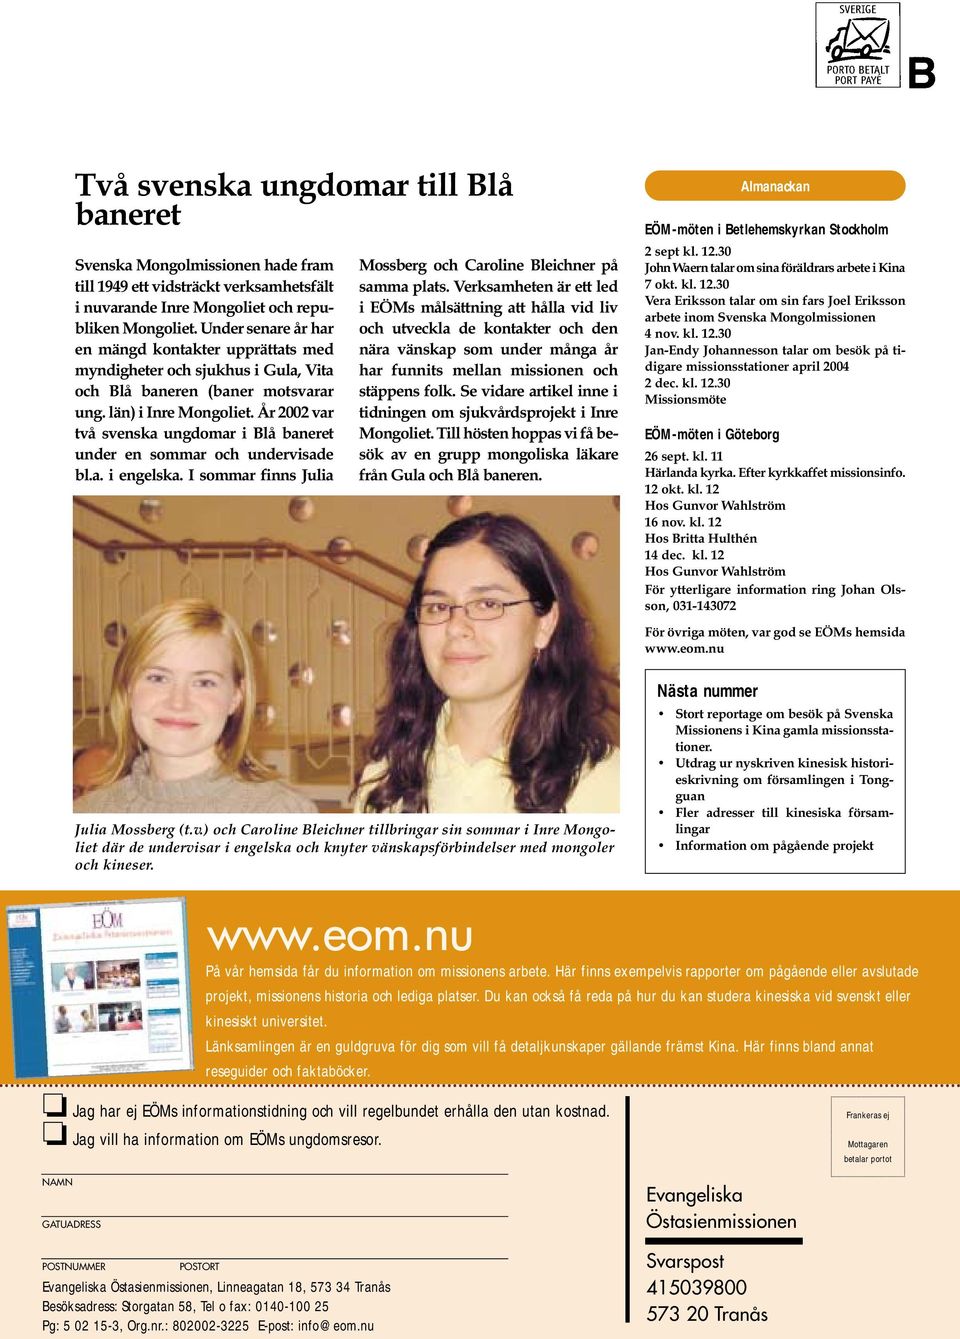 År 2002 var två svenska ungdomar i Blå baneret under en sommar och undervisade bl.a. i engelska. I sommar finns Julia Mossberg och Caroline Bleichner på samma plats.